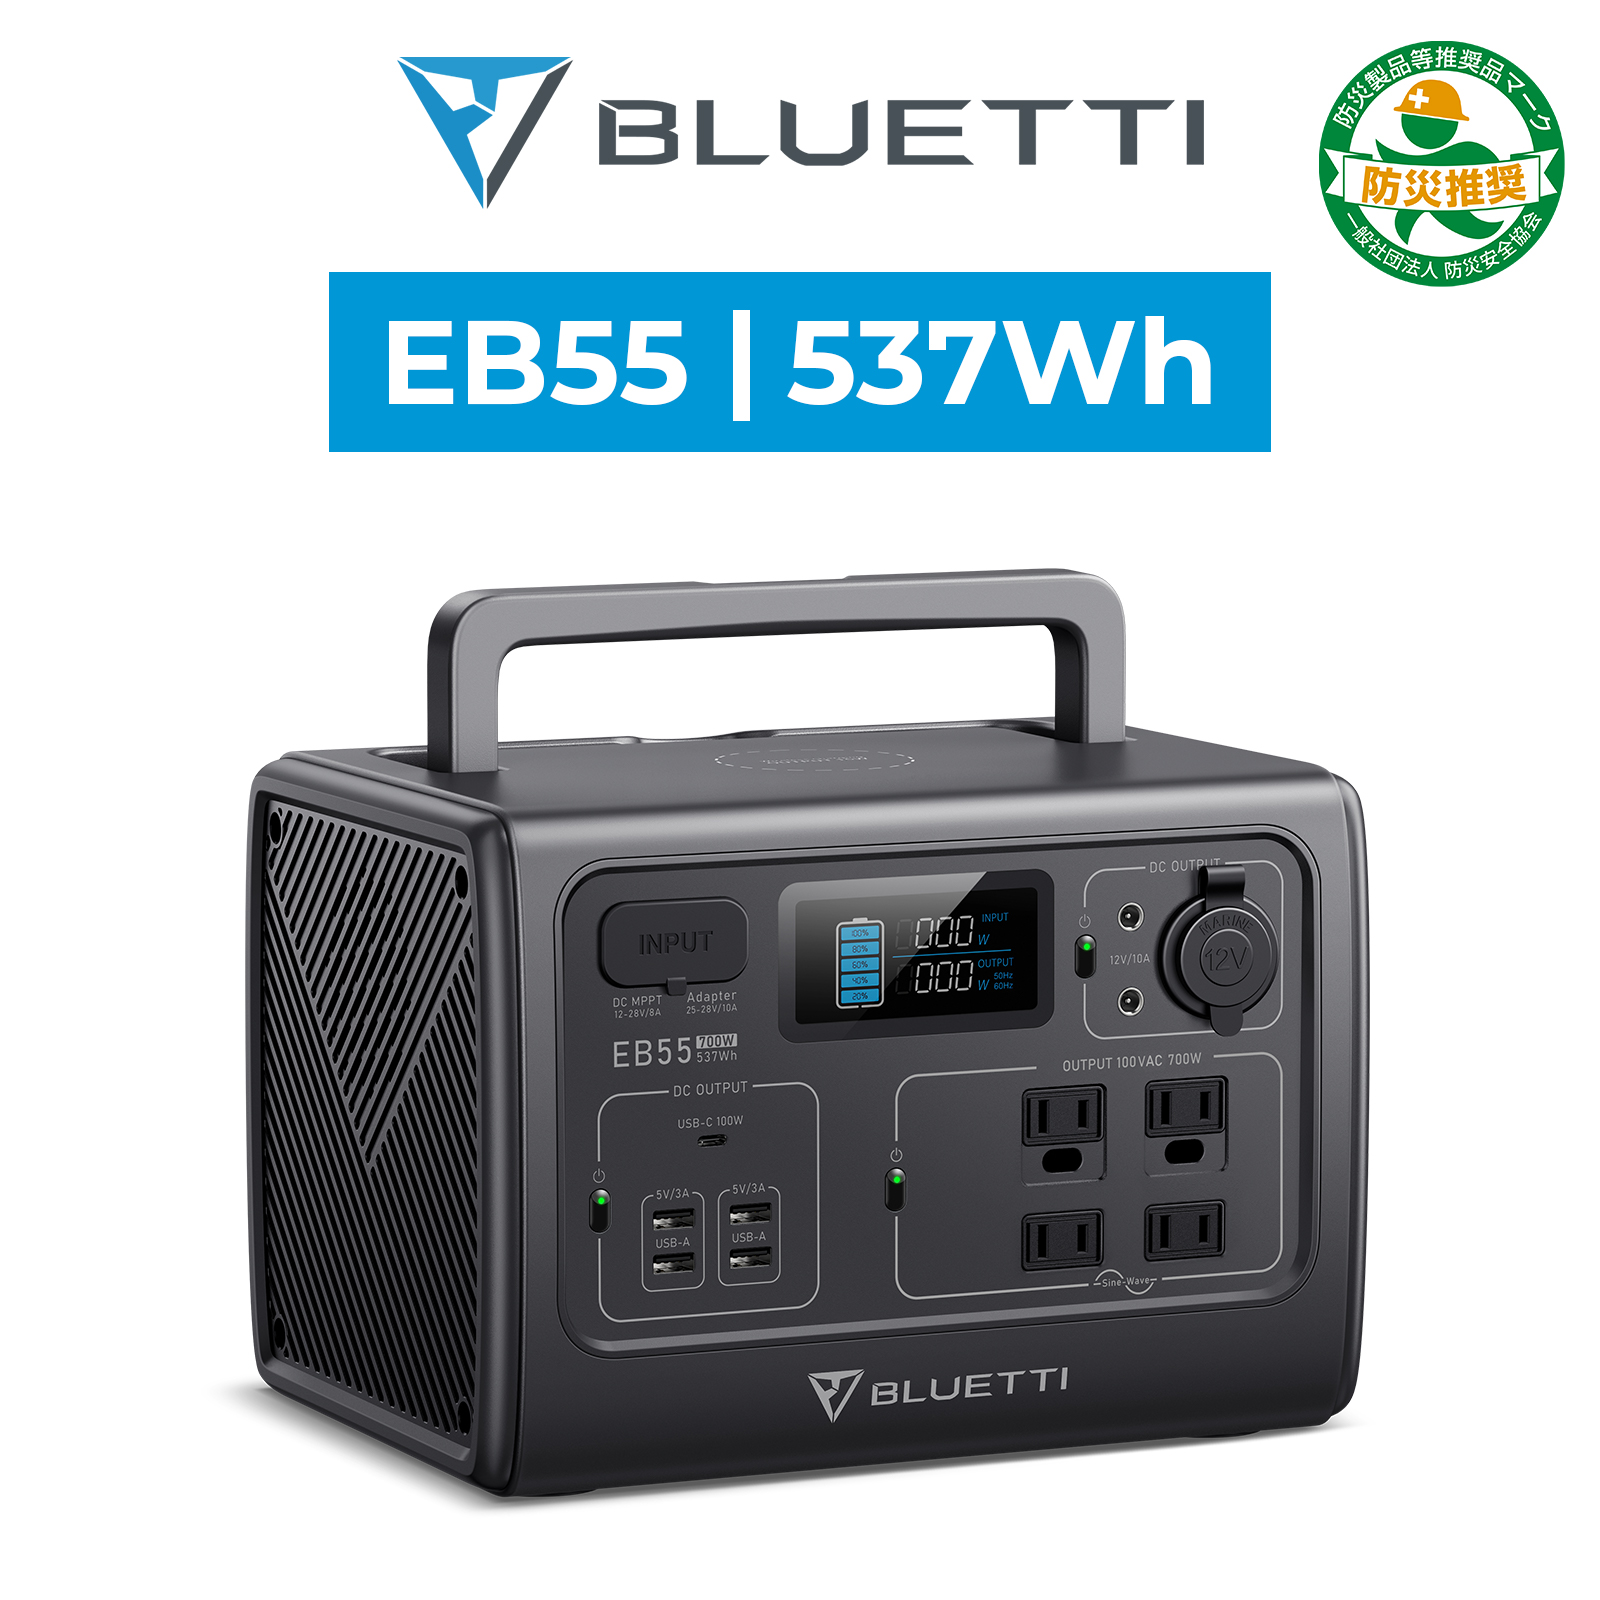 BLUETTI ポータブル電源 EB55 537Wh/700W リン酸鉄 蓄電池 家庭用 軽量 小型 バッテリー ワイヤレス充電 純正弦波 防災 節電